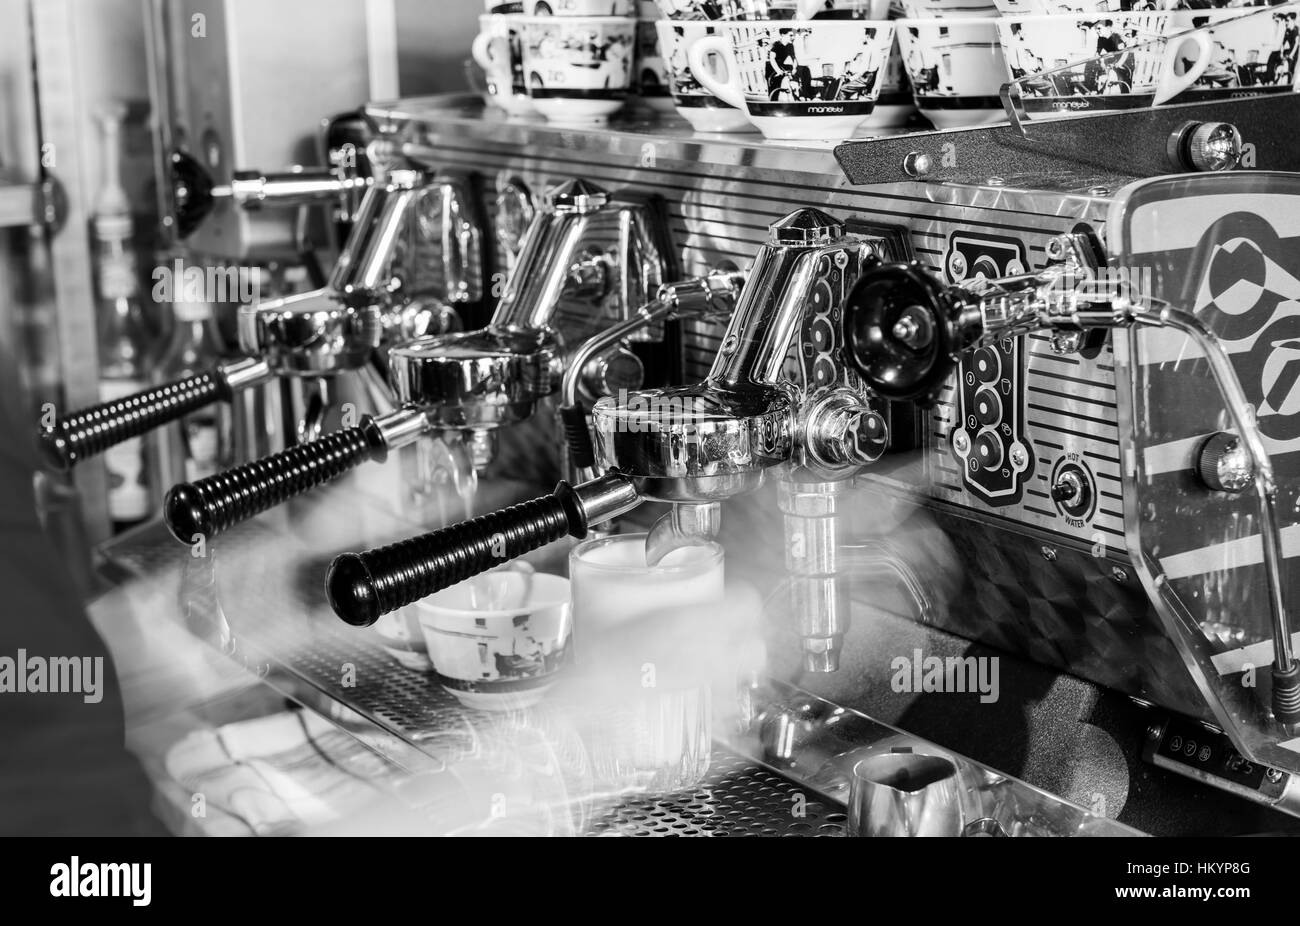 Houten, Niederlande - 26. August 2016: Kaffeezubereitung auf eine professionelle Kaffeemaschine für Cappuccino. Stockfoto